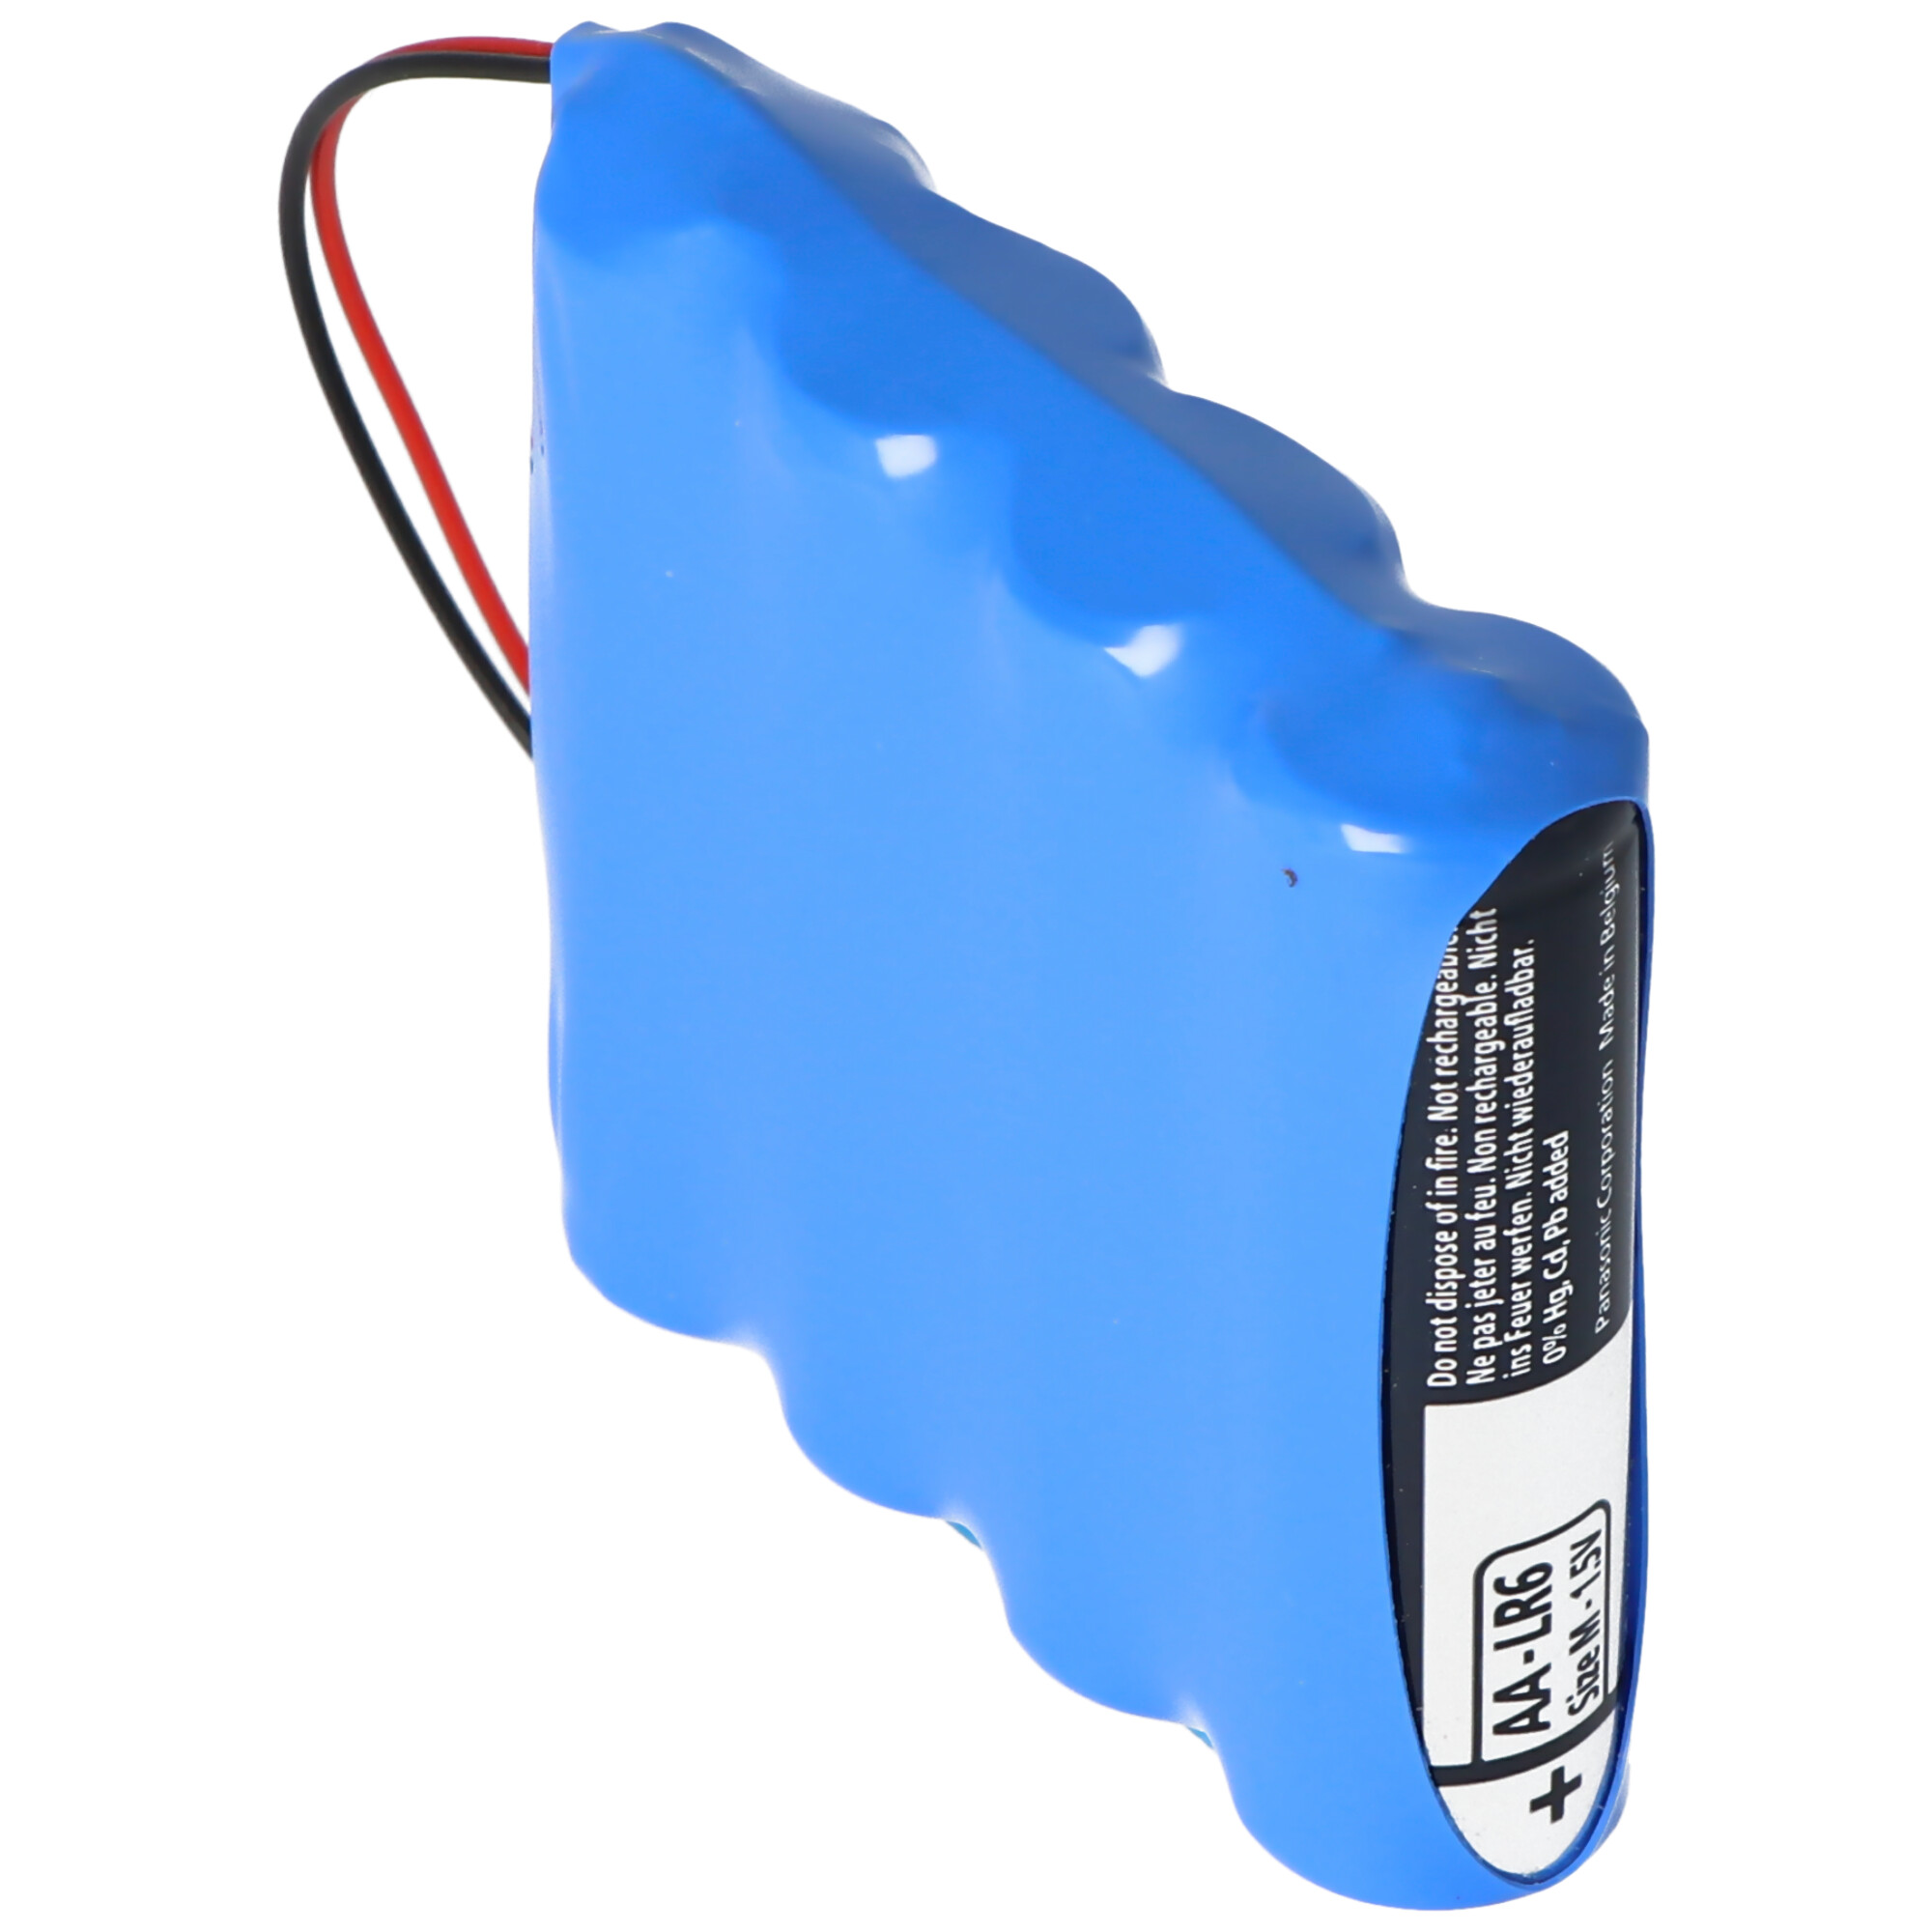 Batteriepack für Messerschmitt 6VQ-02, 09.30 6 Volt Batteriepack, bestehend aus 4x AA Panasonic Batterien, 10cm Kabel inkl. PHR 2 Stecker